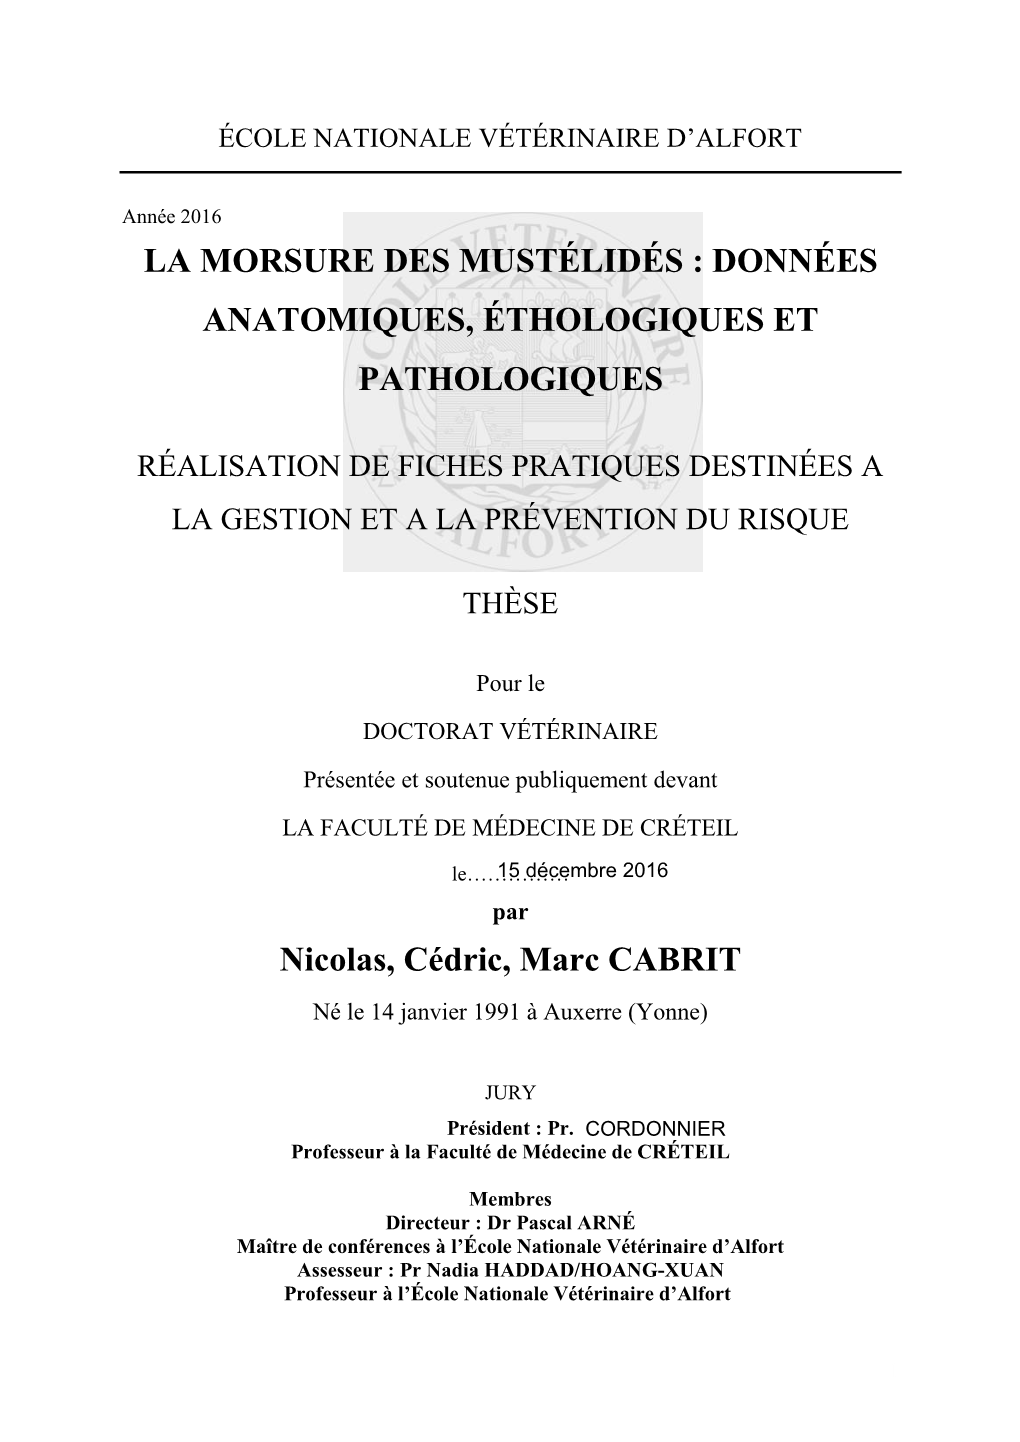 La Morsure Des Mustélidés : Données Anatomiques, Éthologiques Et Pathologiques